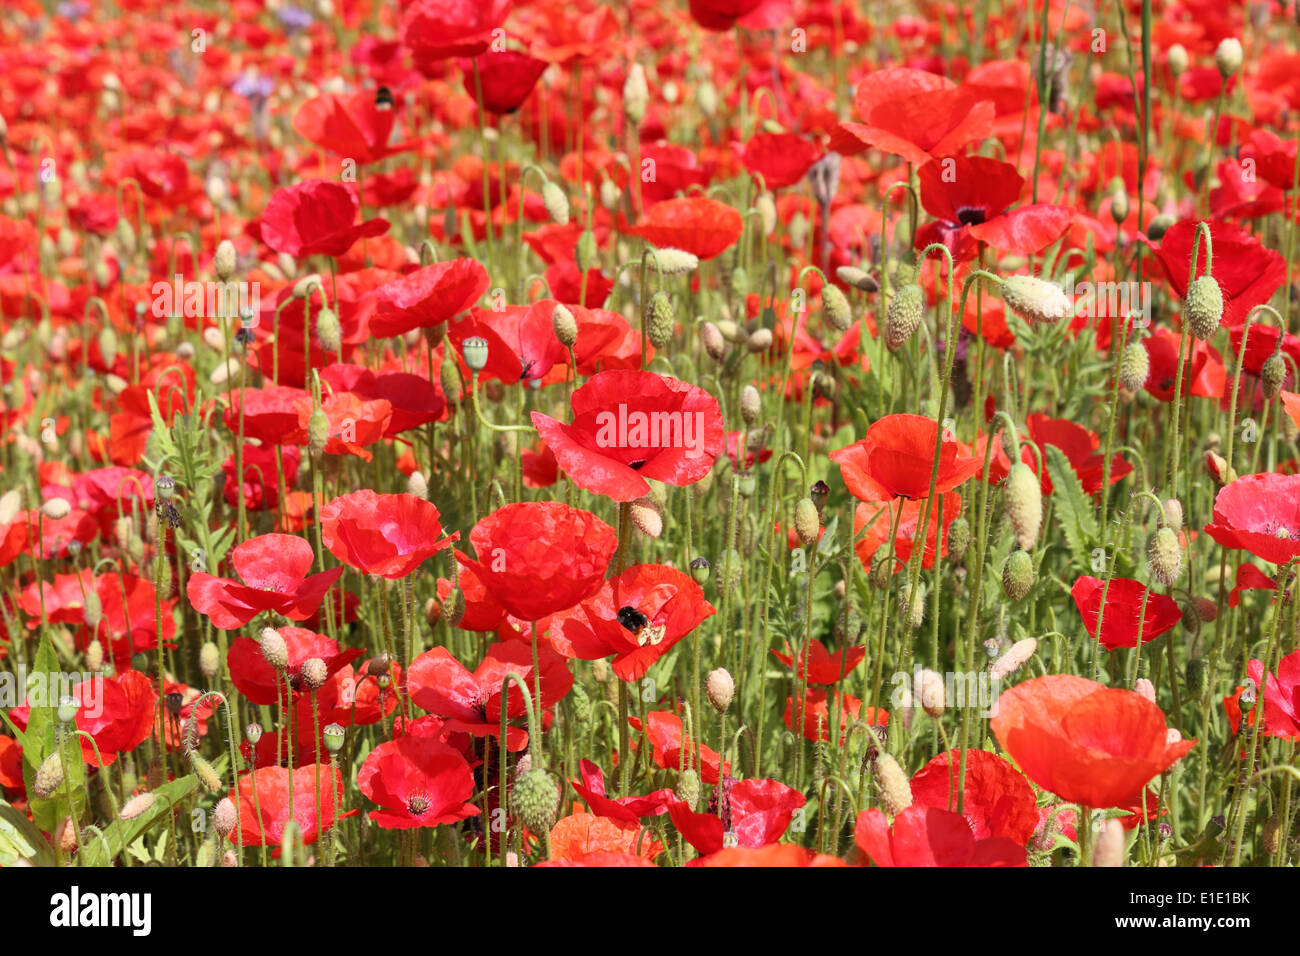 Día De La Conmemoración De La Guerra Mundial. La Amapola Roja Es Símbolo De  Recuerdo De Los Caídos En La Guerra. Corona De Amapolas Rojas. Fotos,  retratos, imágenes y fotografía de archivo